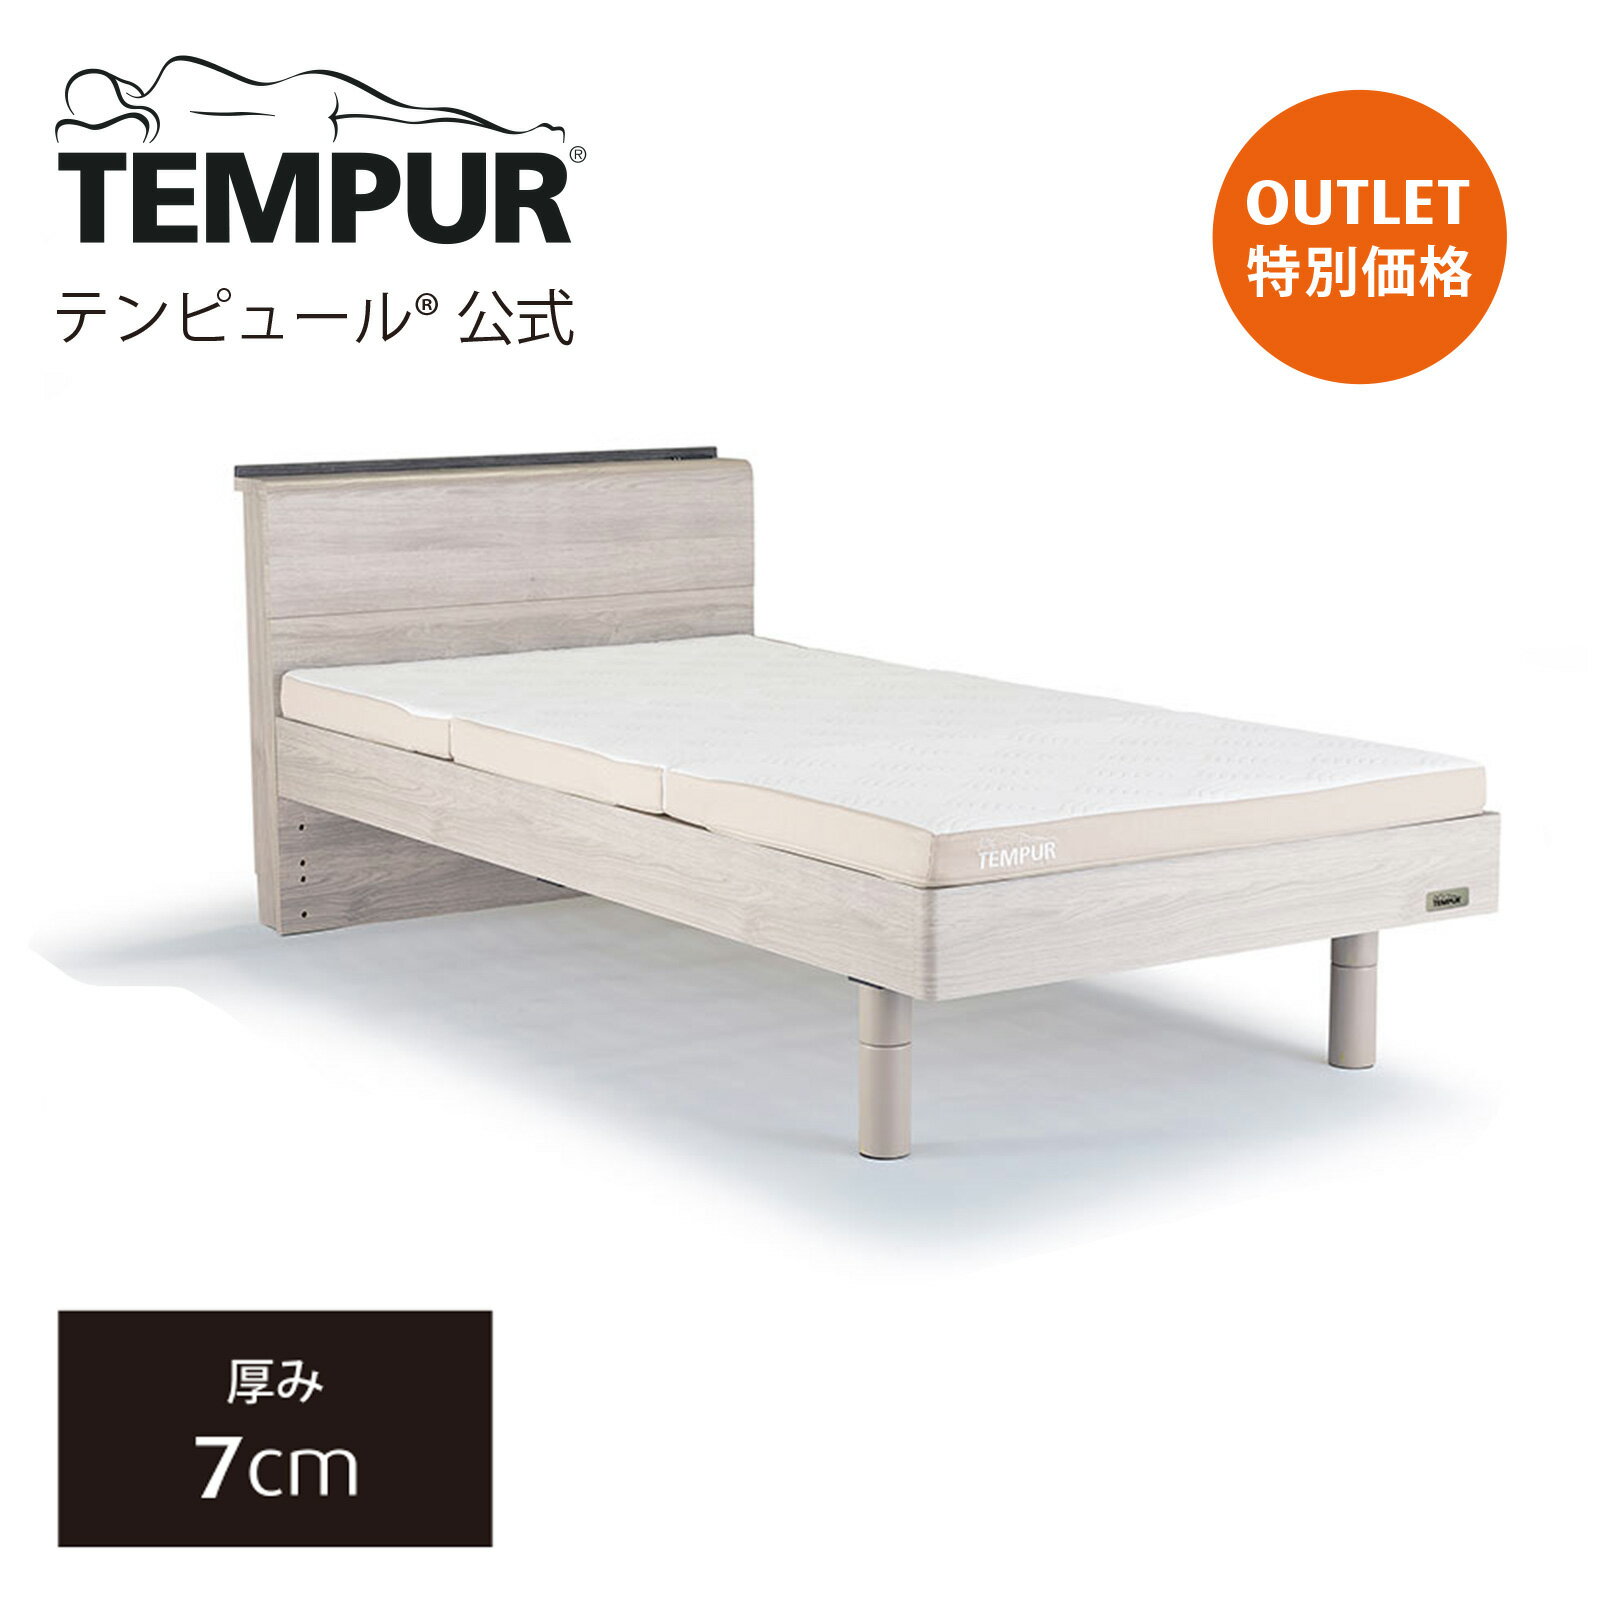 【アウトレット特別価格】テンピュール ベッド マットレス シングル セミダブル ダブル Tempur 木製ベッドと薄型マットレスのセット すのこベッド ワン フトン 厚み7cm 日本正規品 保証なし